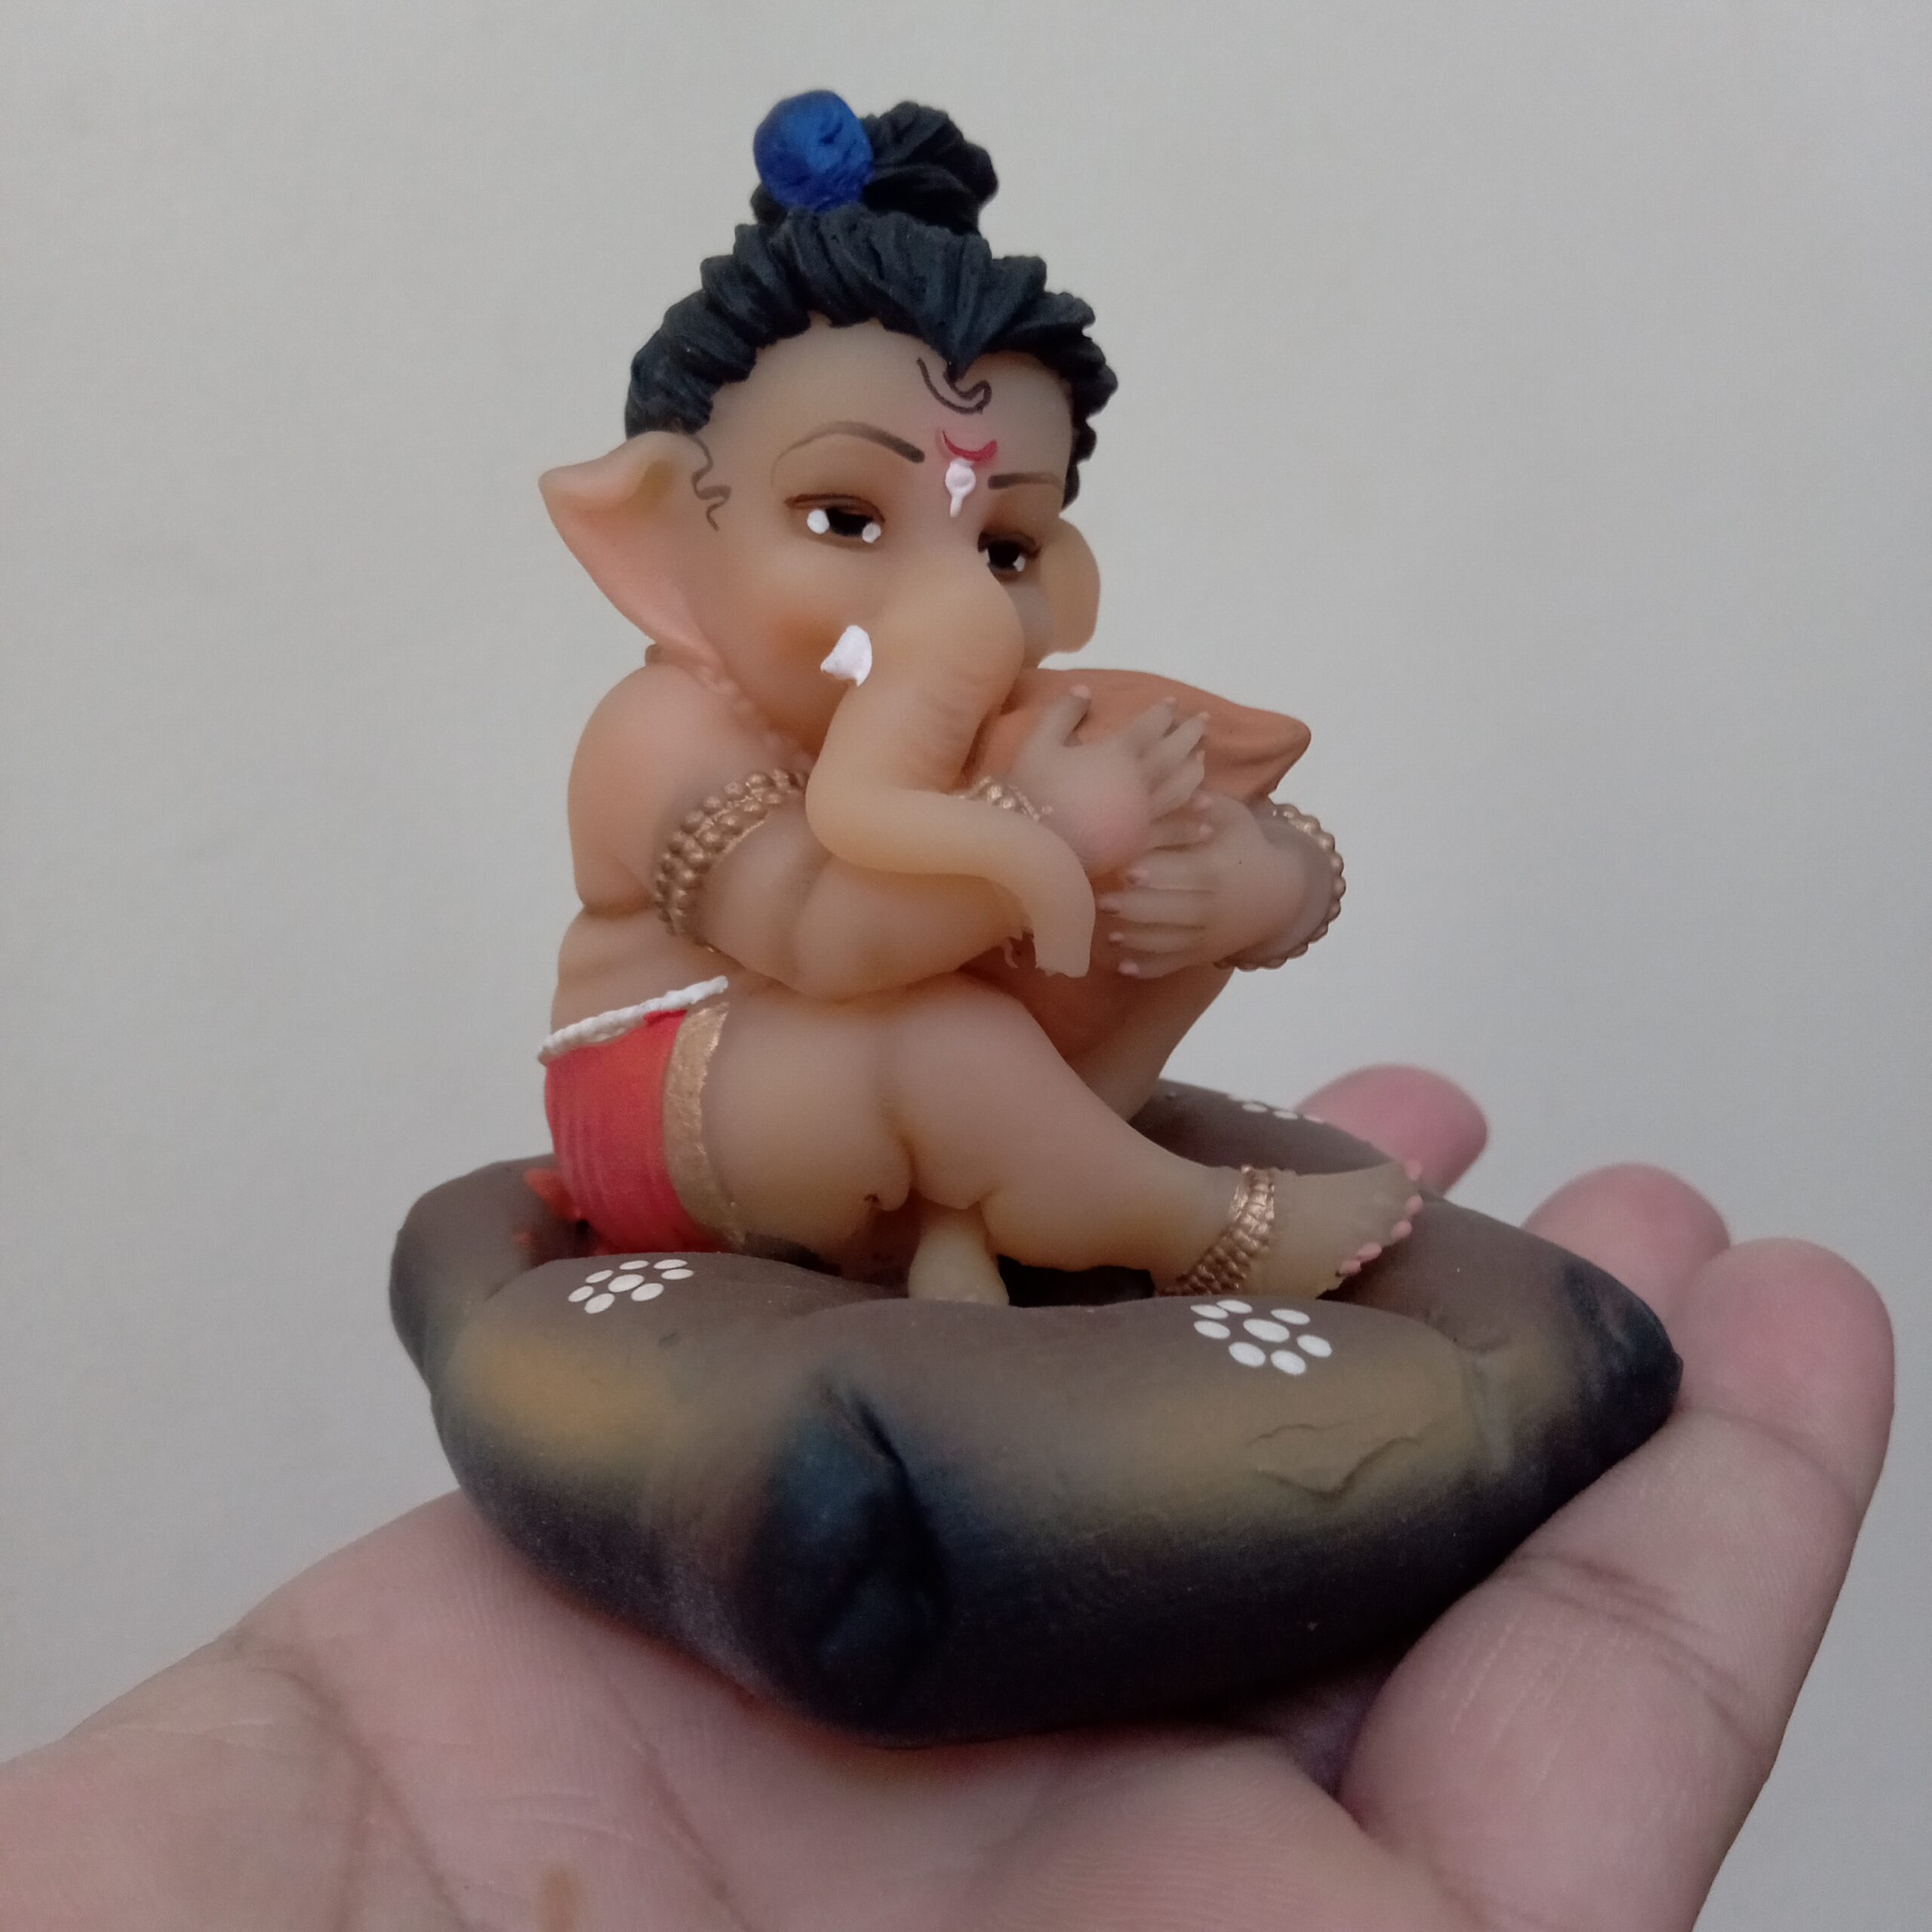 Download and Share Ganesh Wallpaper and Bal Ganesh, Art Image